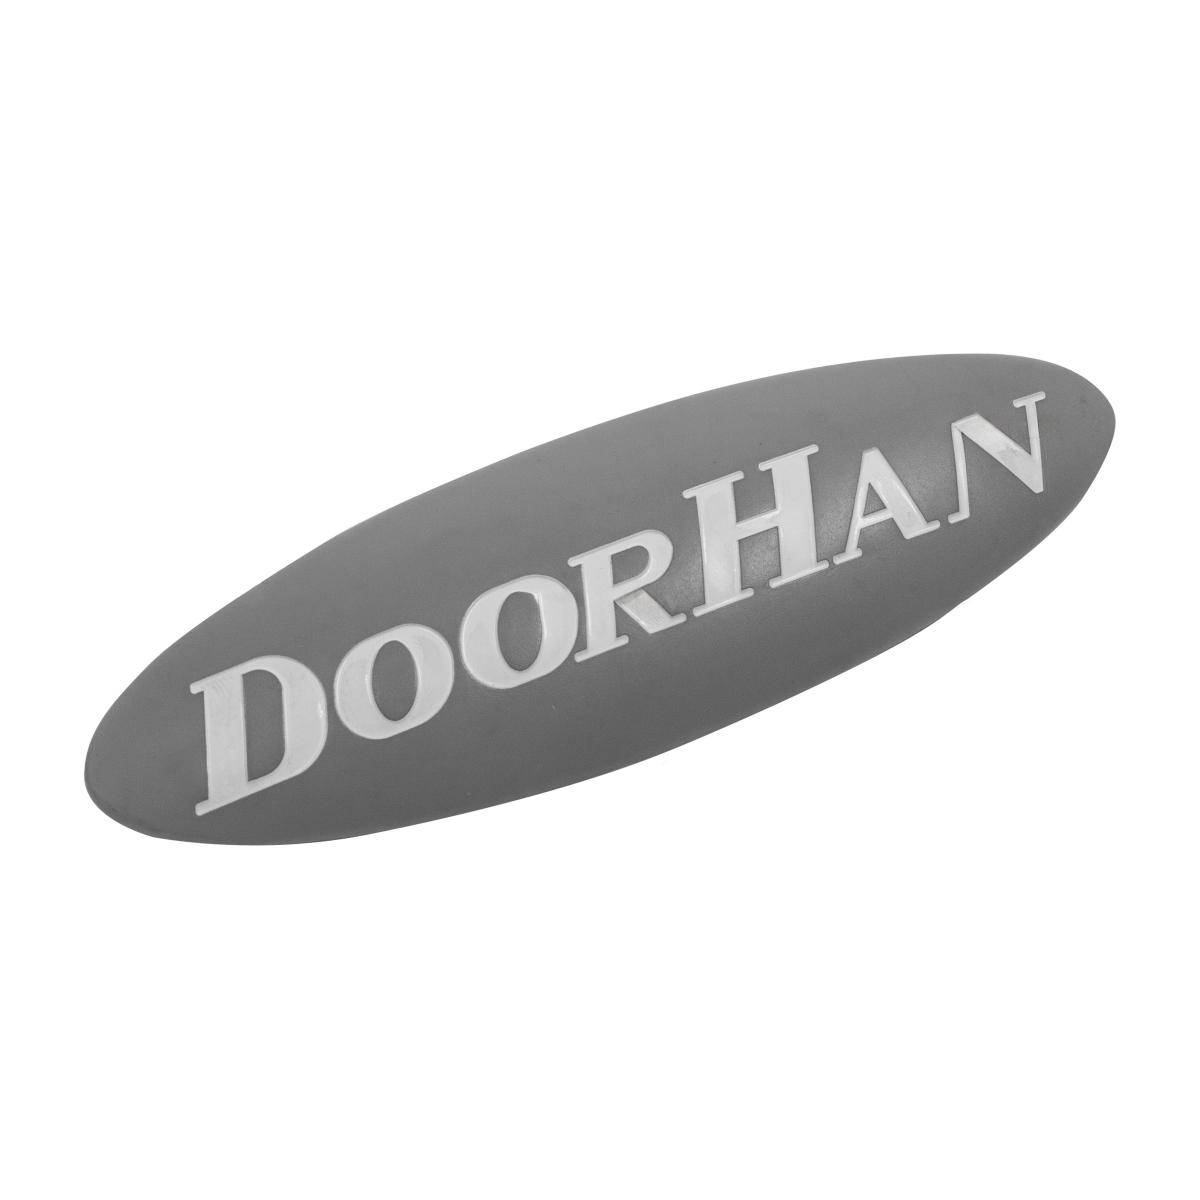 DoorHan Логотип DoorHan для привода SE-750/1200